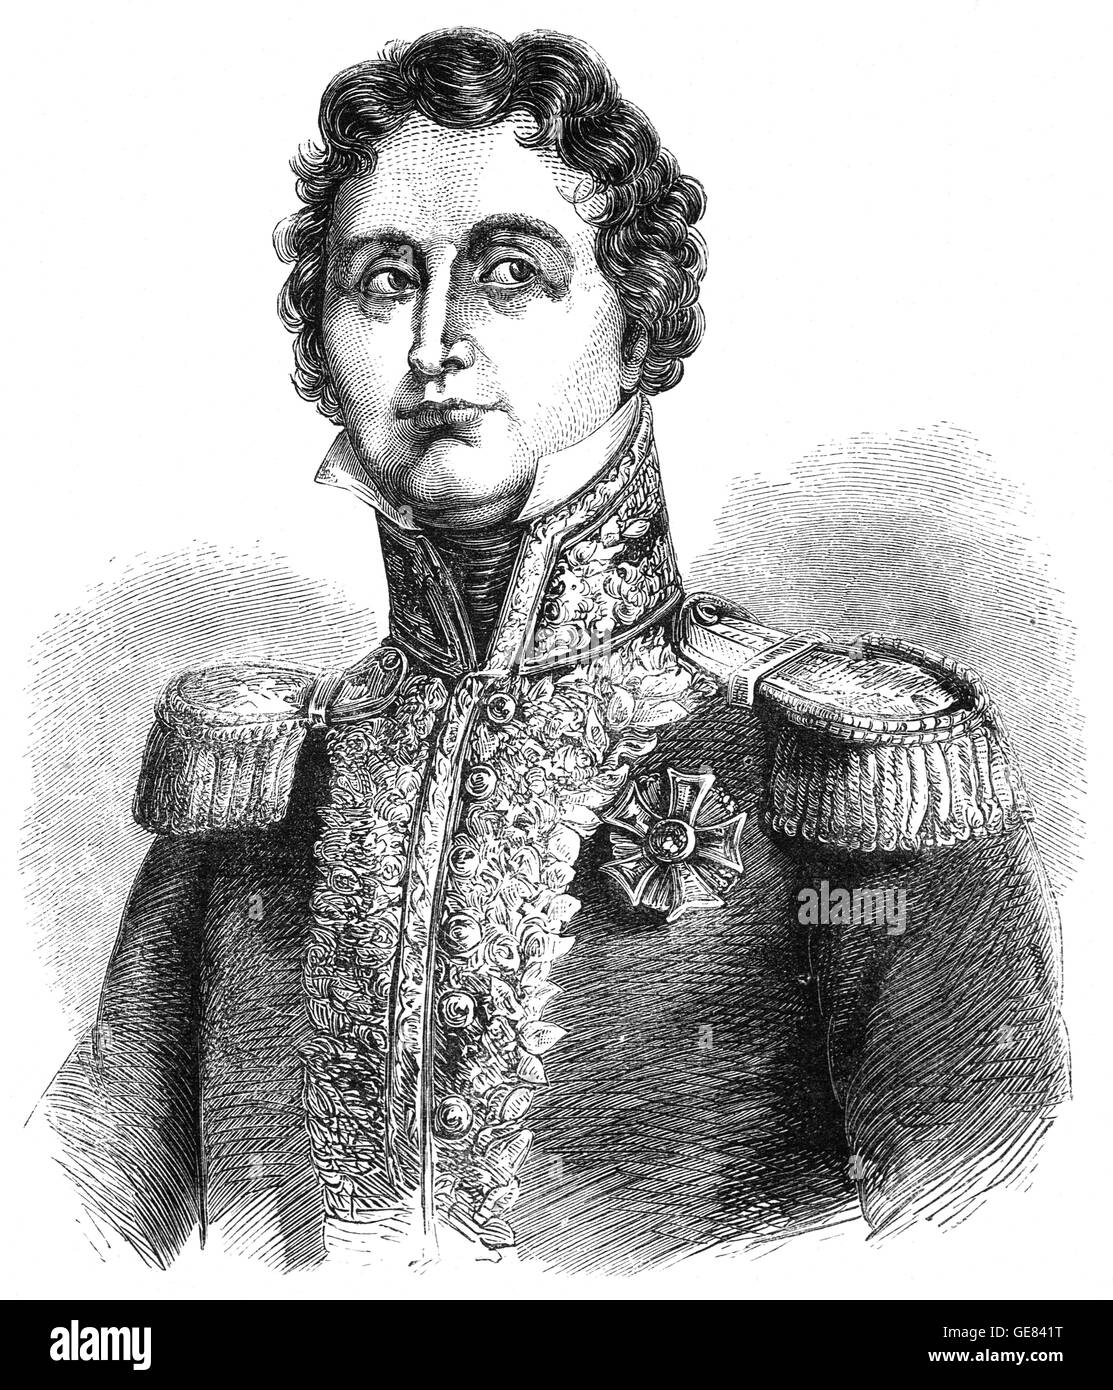 Il maresciallo generale Jean de Dieu Soult (1769 - 1851), è stato un generale francese e statista, nominato maresciallo dell'Impero nel 1804 e spesso chiamato il maresciallo Soult. Egli ha anche servito tre volte come Presidente del Consiglio dei ministri, o il primo ministro di Francia. Foto Stock